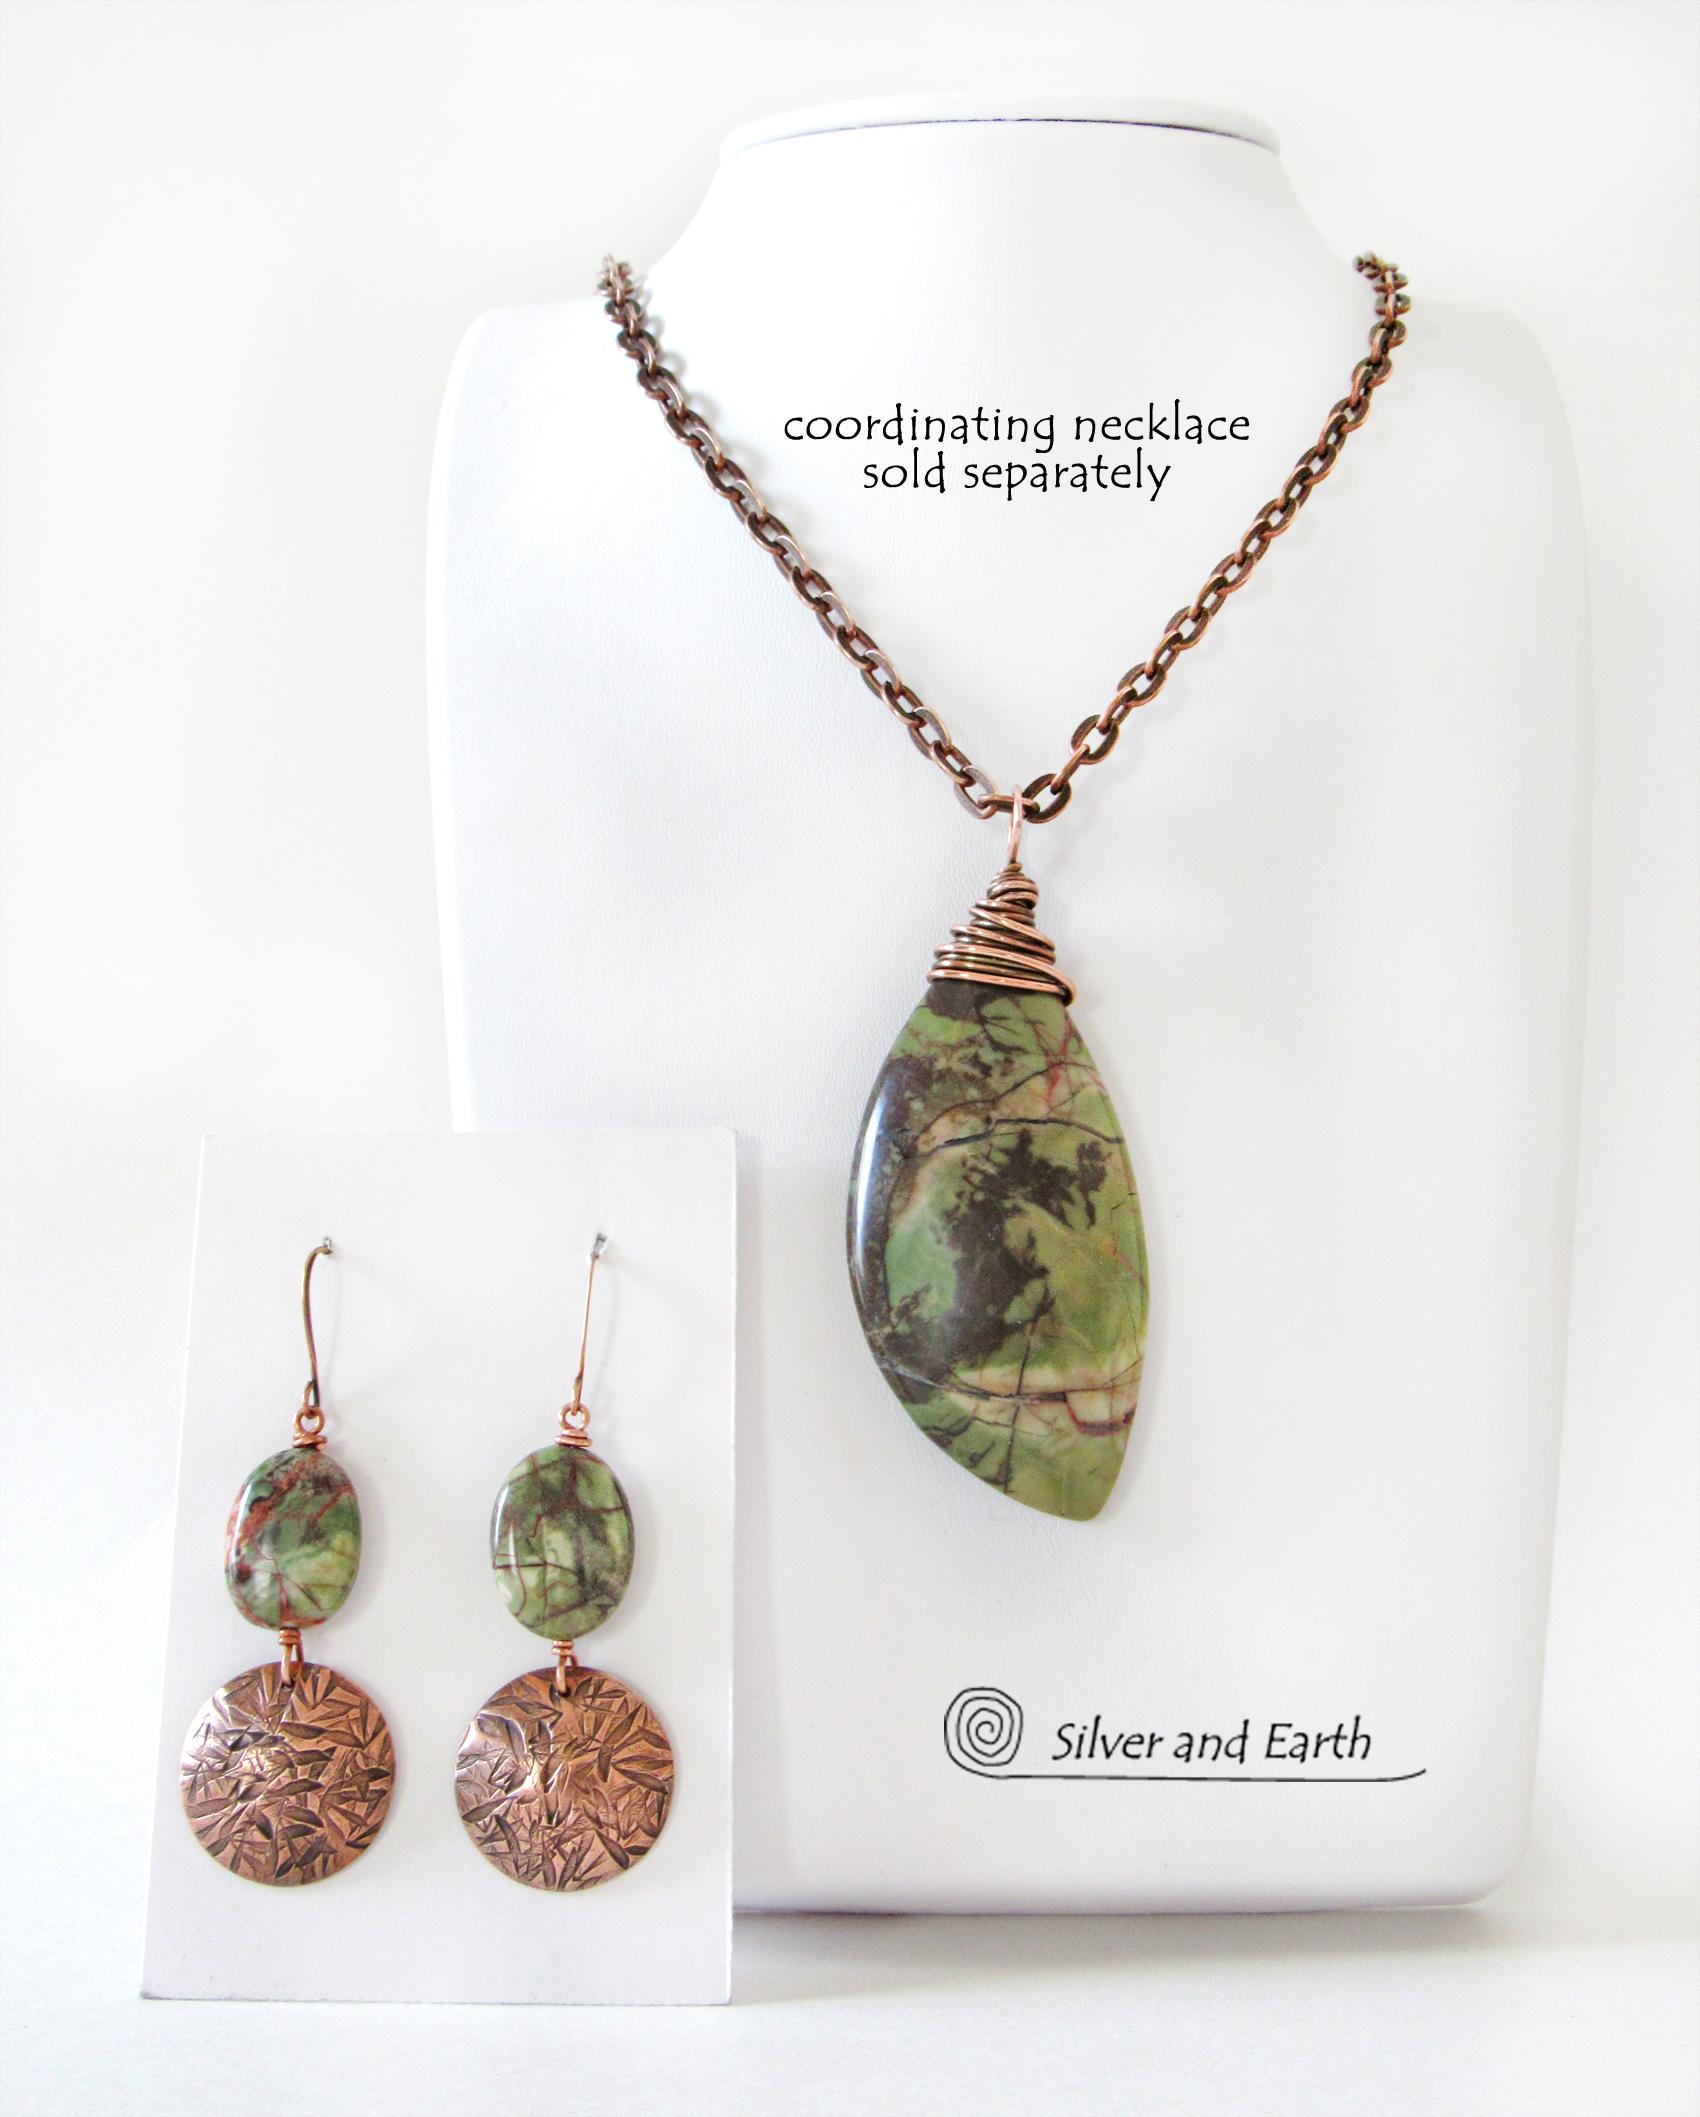 Textured Copper Dangle Earrings with Green Rhyolite Jasper Stones